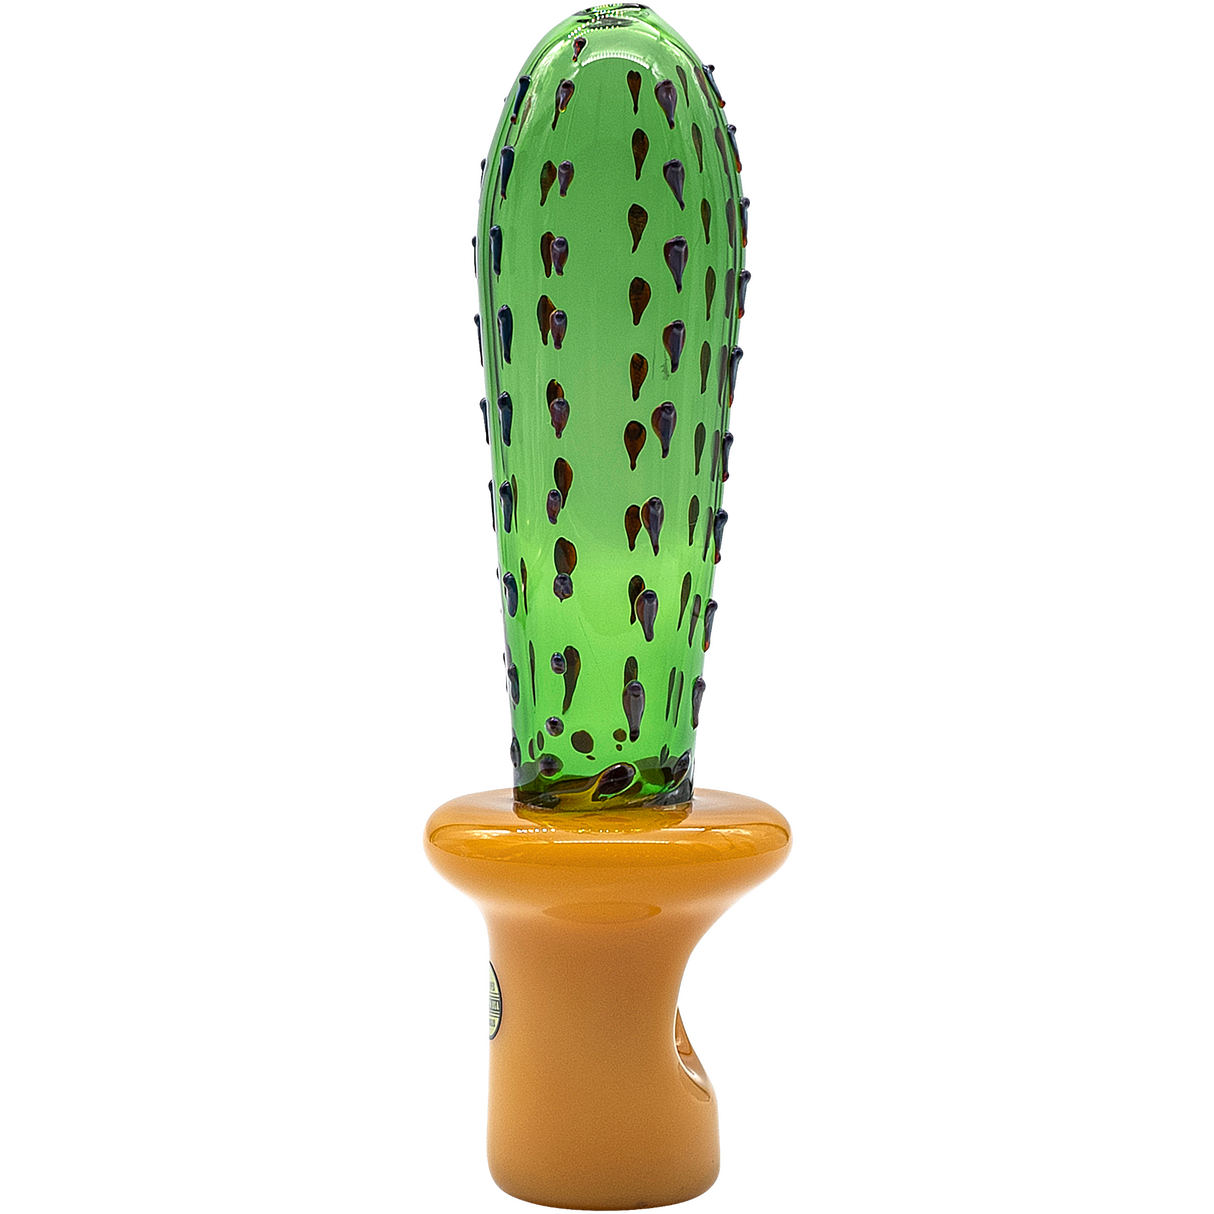 LA Pipes San Pedro Cactus Glass Pipe, 5" Spoon Design, Green Borosilicate Glass, Front View